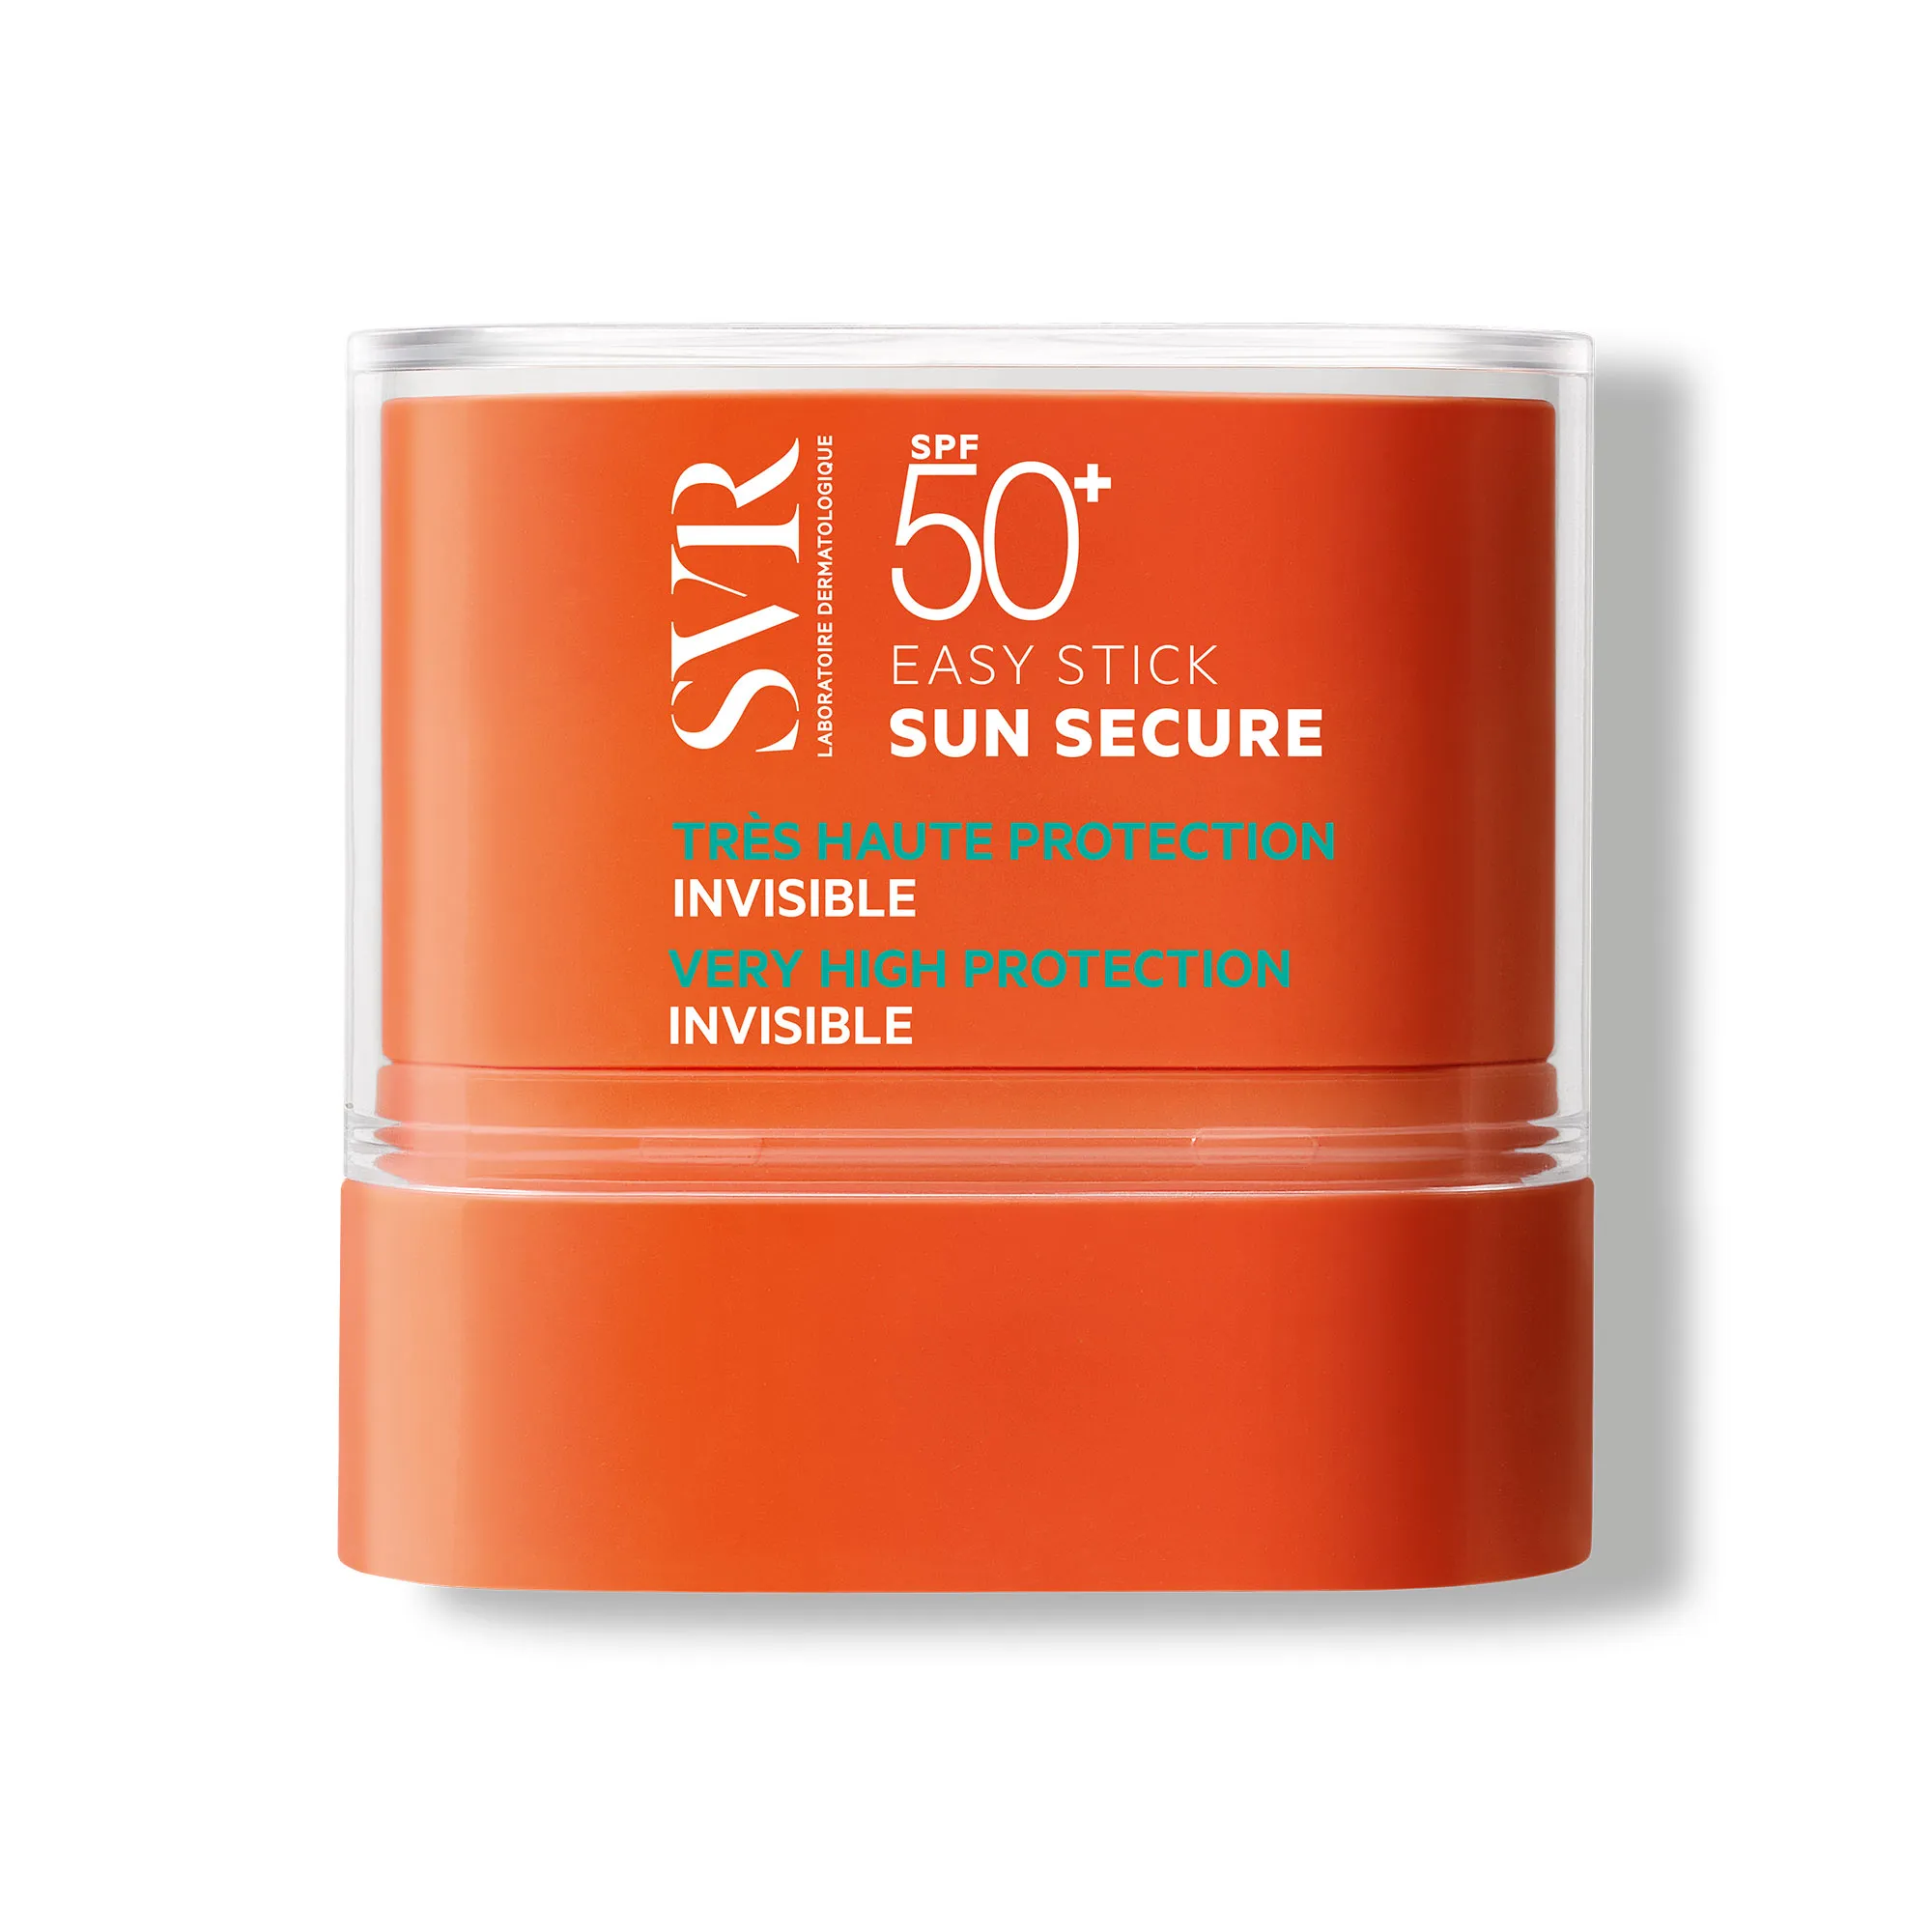 SVR Sun Secure Easy Stick SPF 50+, transparentny sztyft przeciwsłoneczny SPF 50+, 10 g 